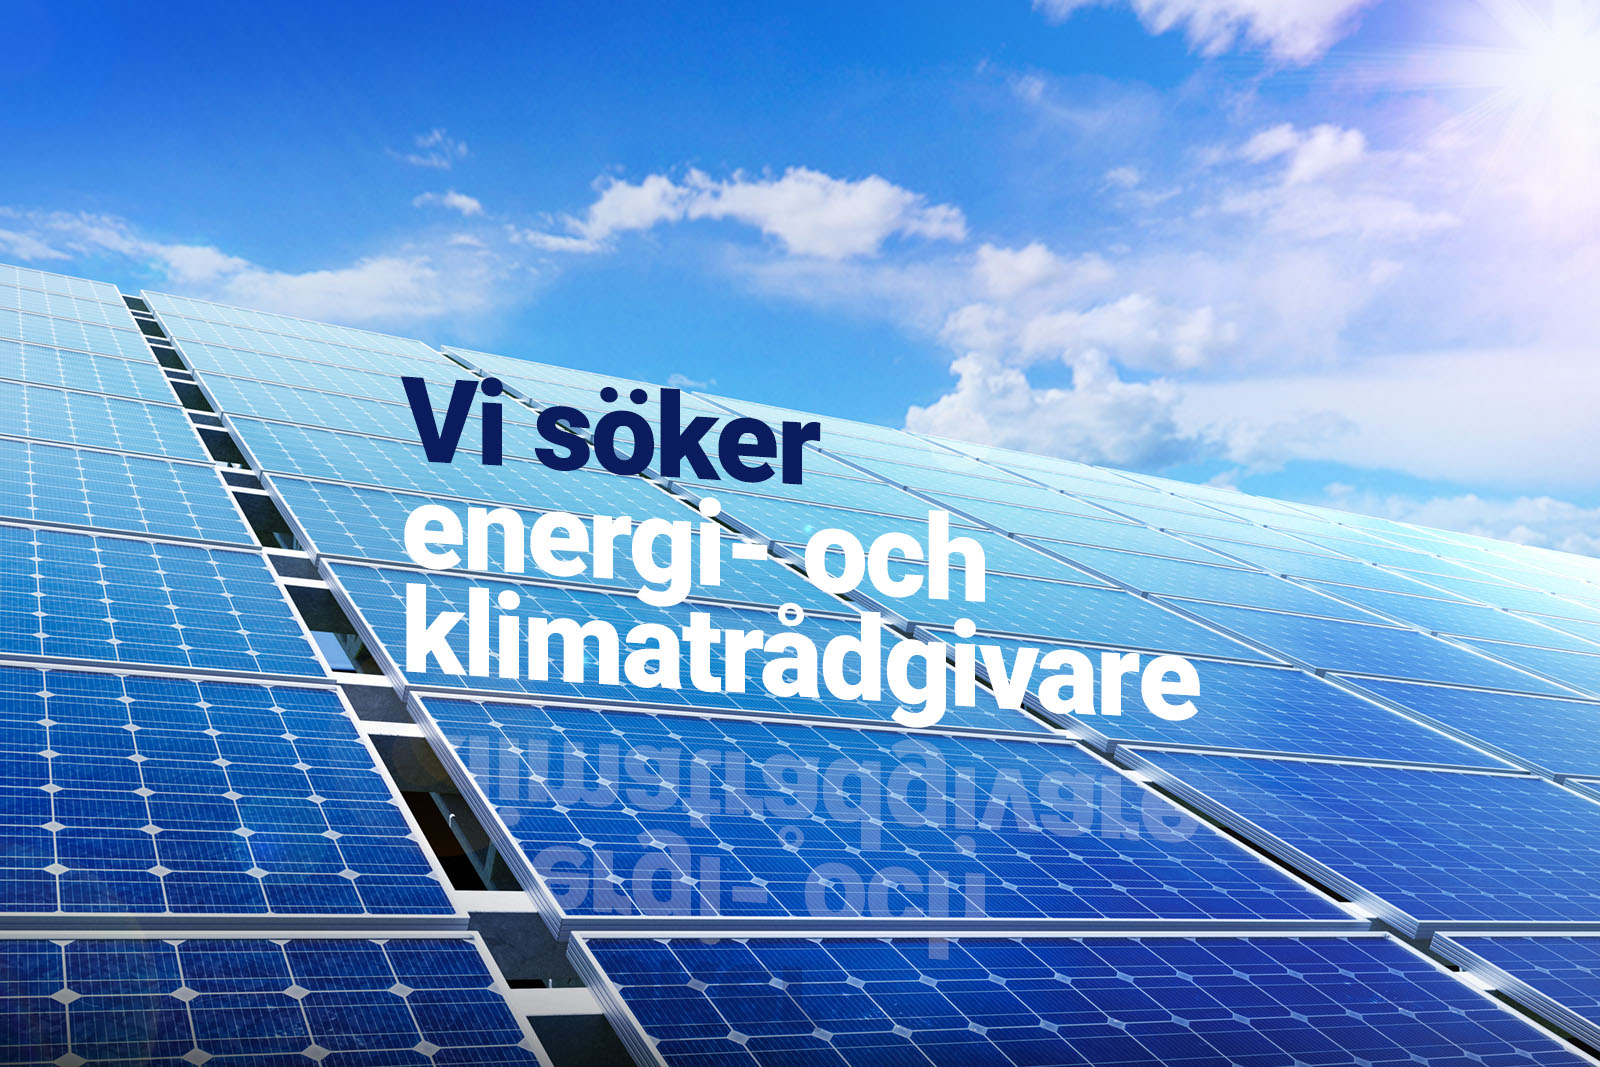 Solpaneler under blå himmel. På solpanelerna står texten "Vi söker energi- och klimatrådgivare" och texten speglas i solpanelerna.